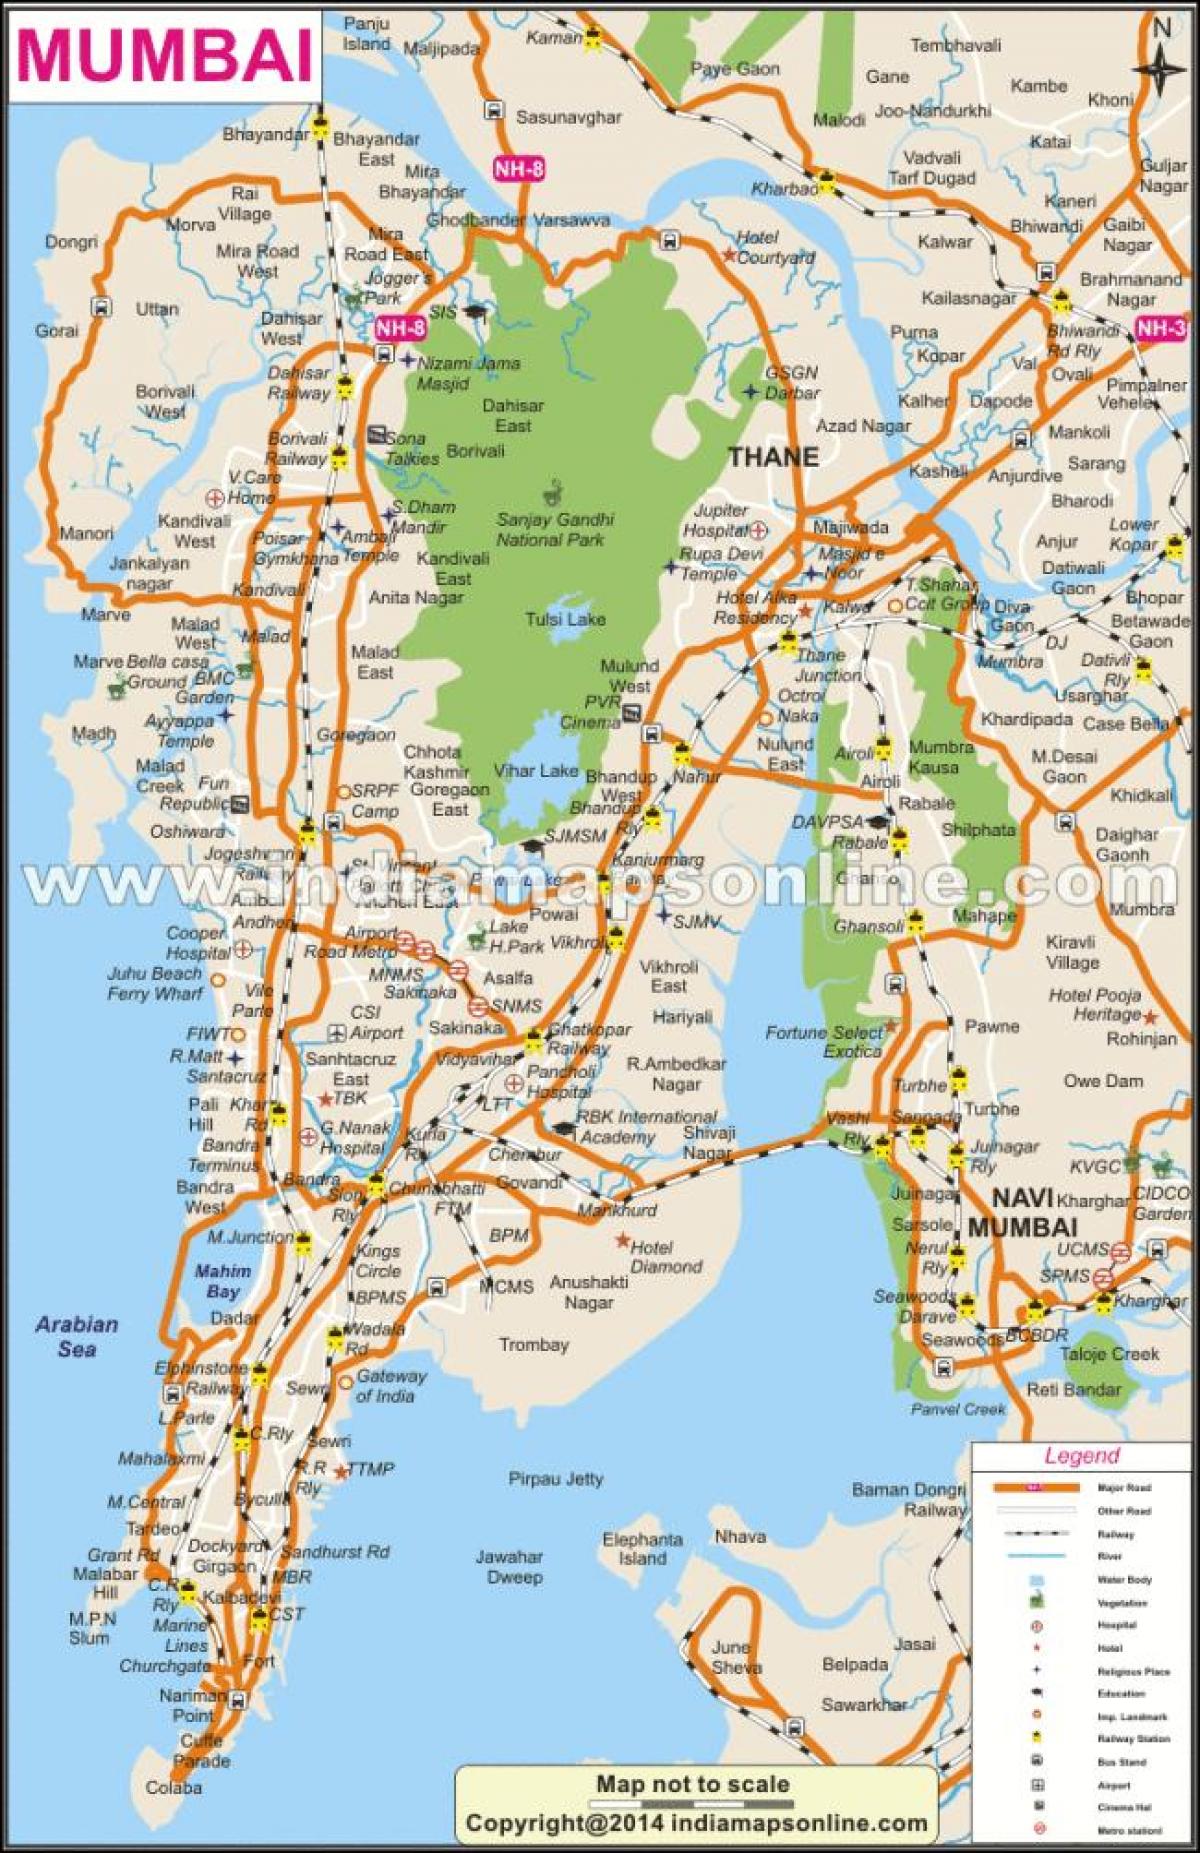 Bombaj na mapě